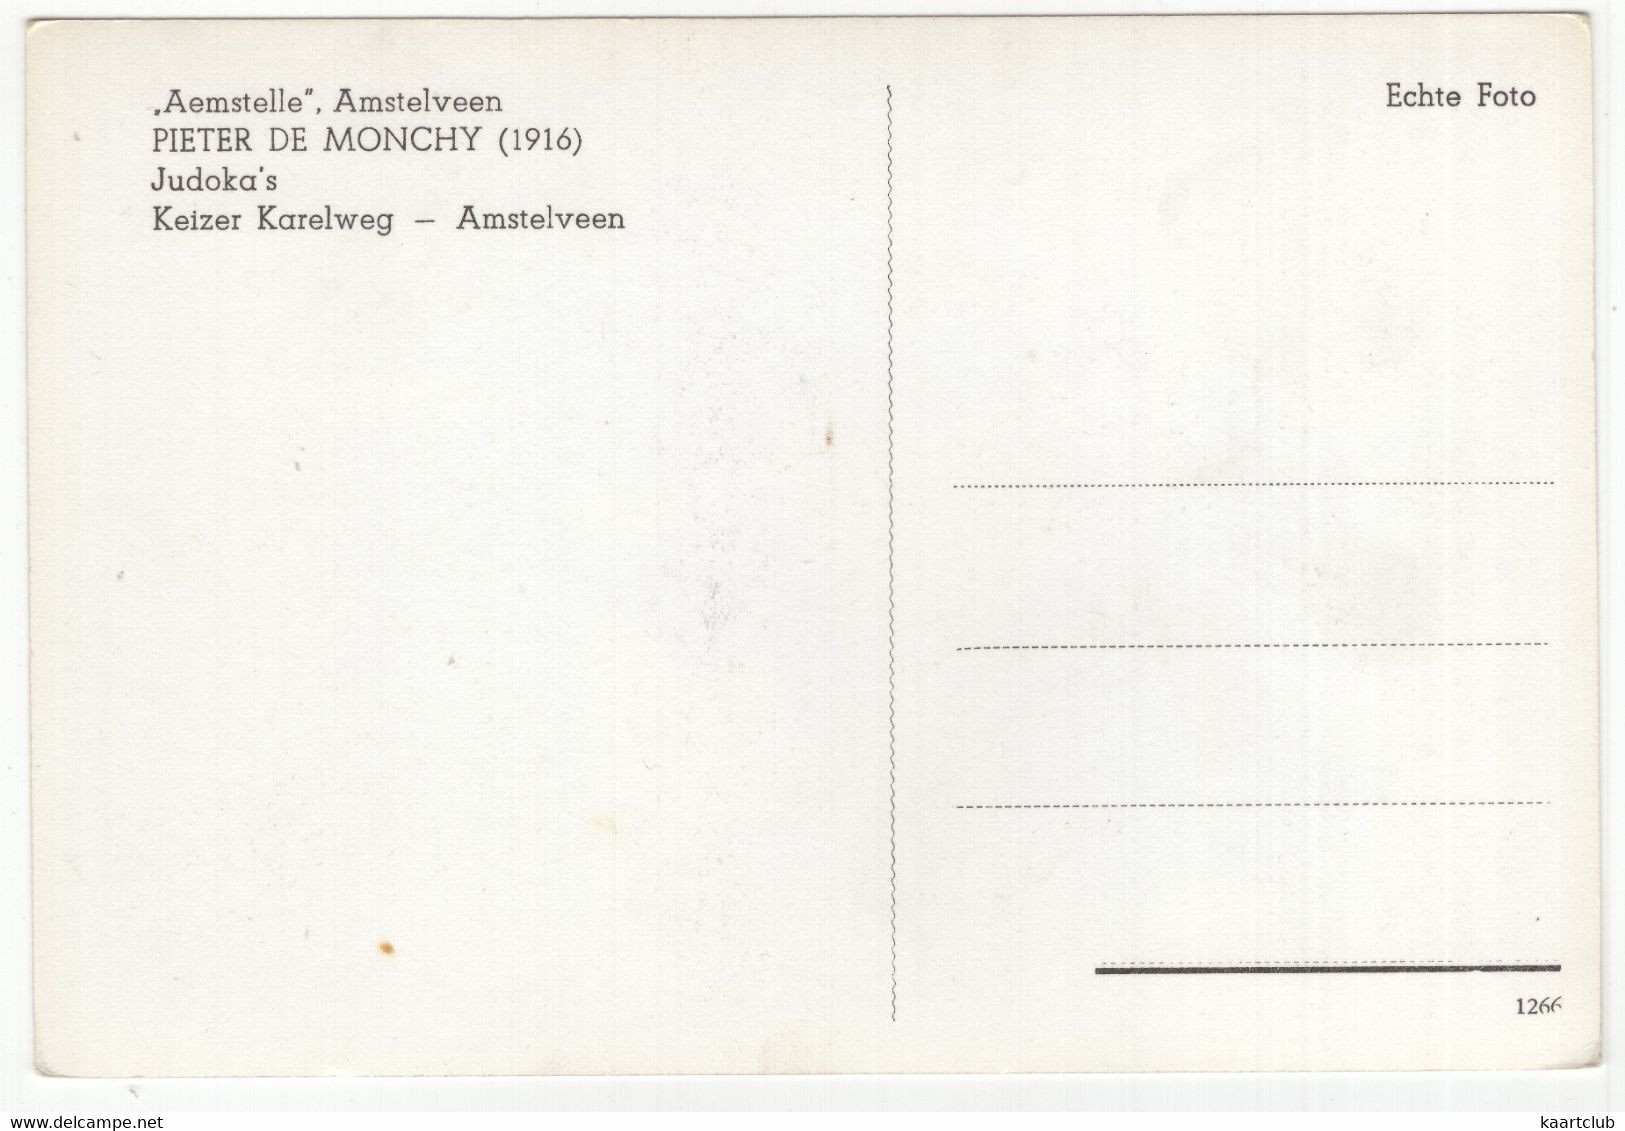 'Aemstelle', Amstelveen - 'Judoka's' (Pieter De Monchy 1916) - Keizer Karelweg - Amstelveen